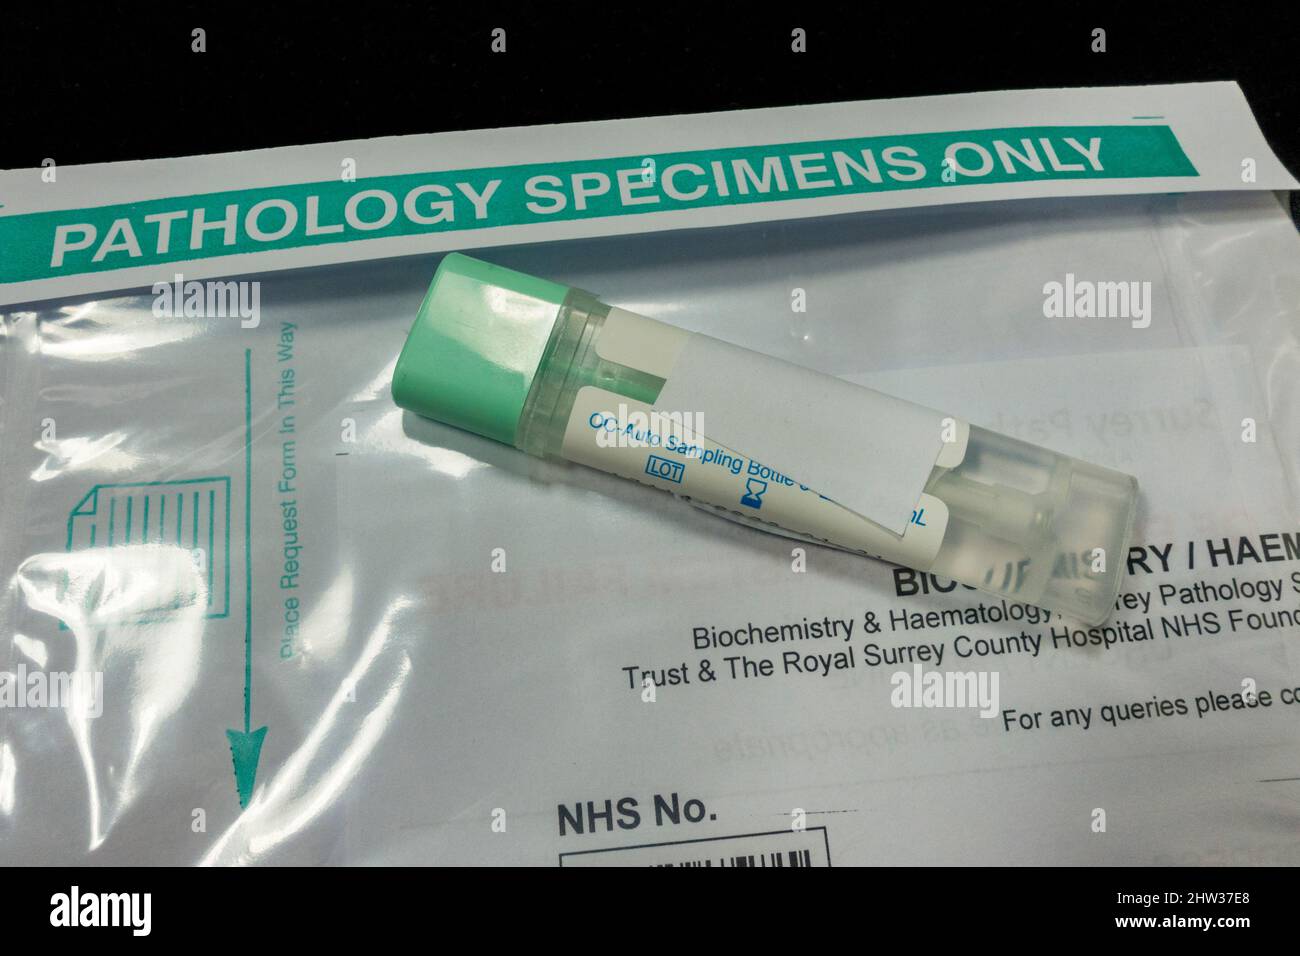 Eine OC-Auto Sampling Bottle zur Entnahme von Stuhlproben, die vom  britischen NHS zur Entnahme medizinischer Proben/Proben verwendet werden  Stockfotografie - Alamy